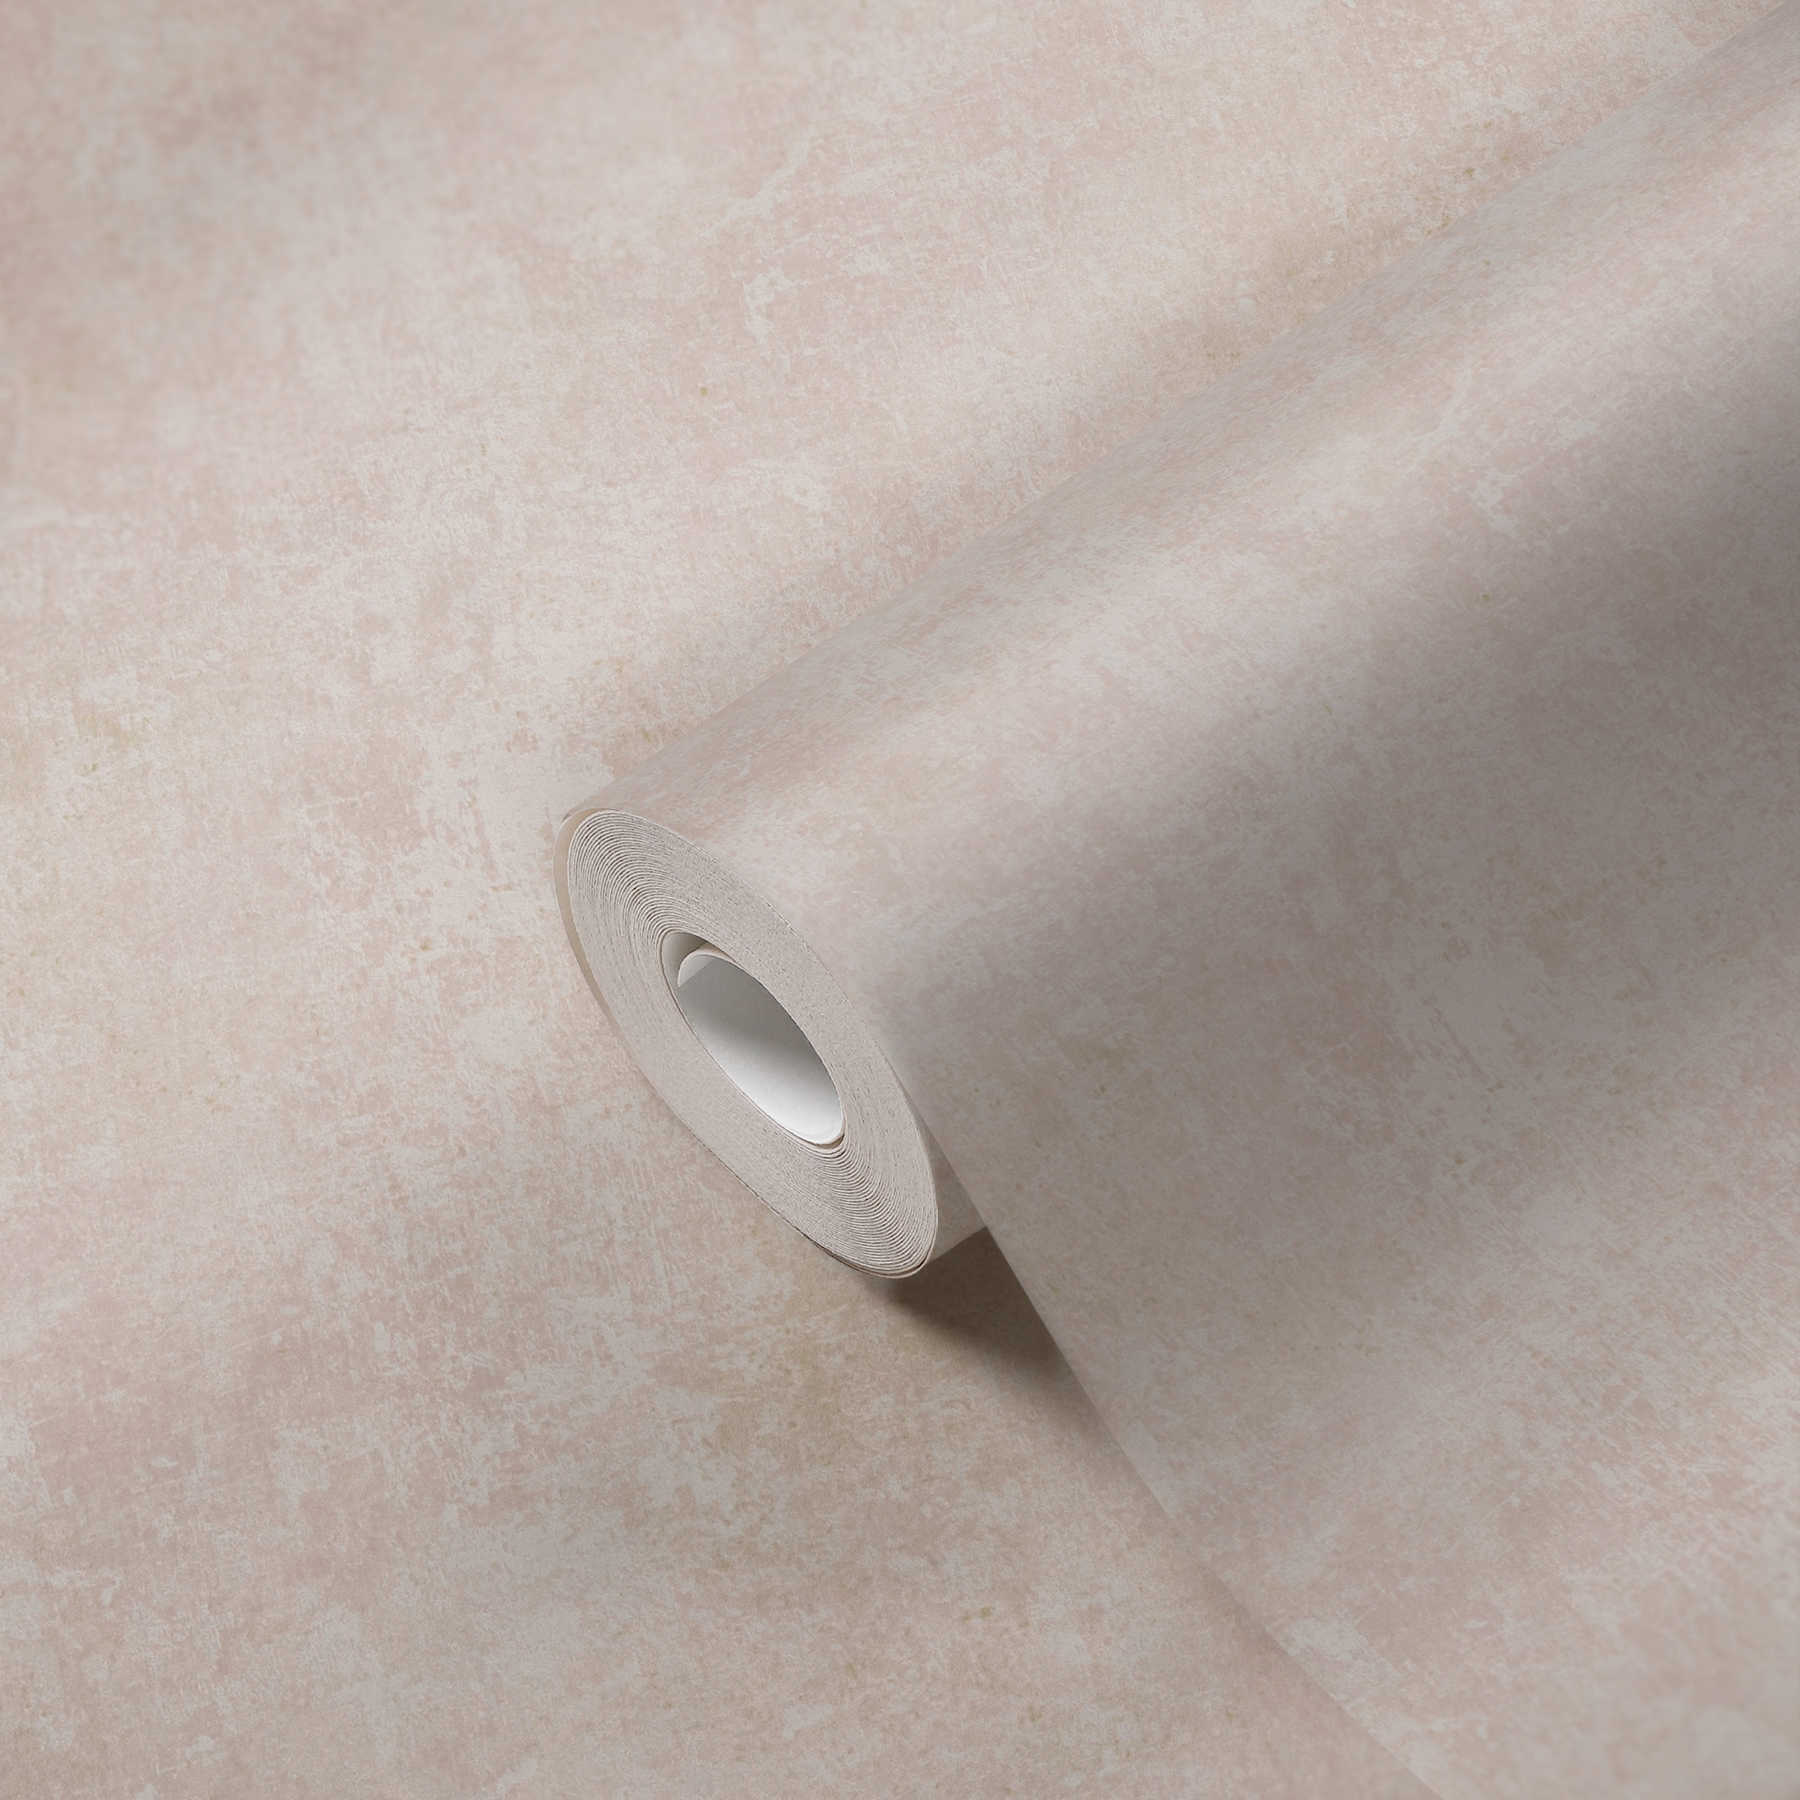             Non-woven wallpaper plaster look, used & retro design - pink, cream
        